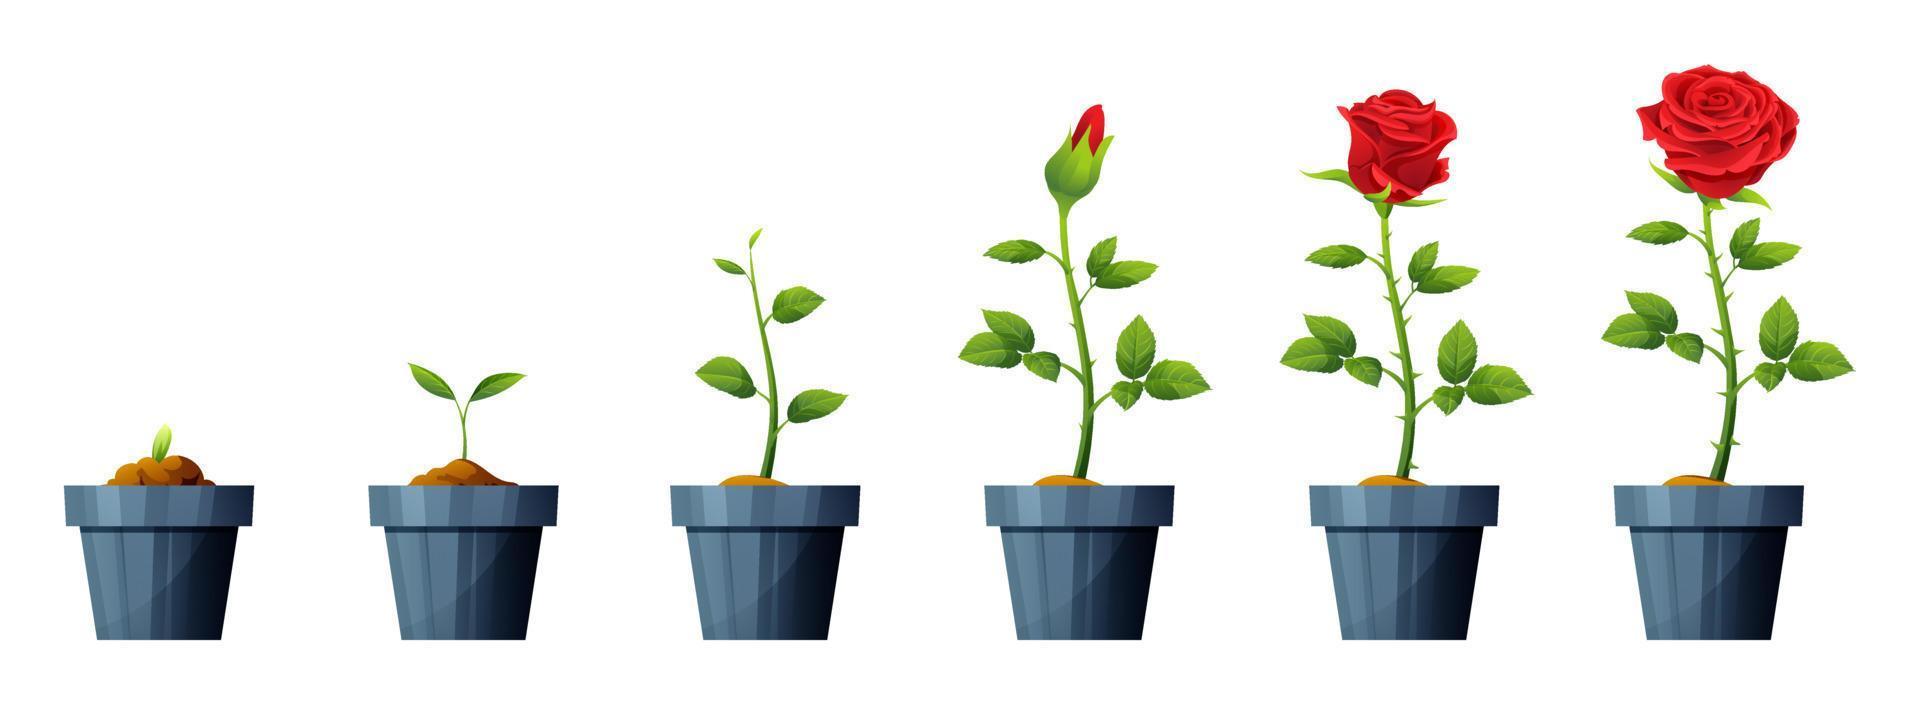 ilustração de estágios de desenvolvimento e crescimento de flores rosa vermelha linda. ciclo de vida da flor rosa vetor